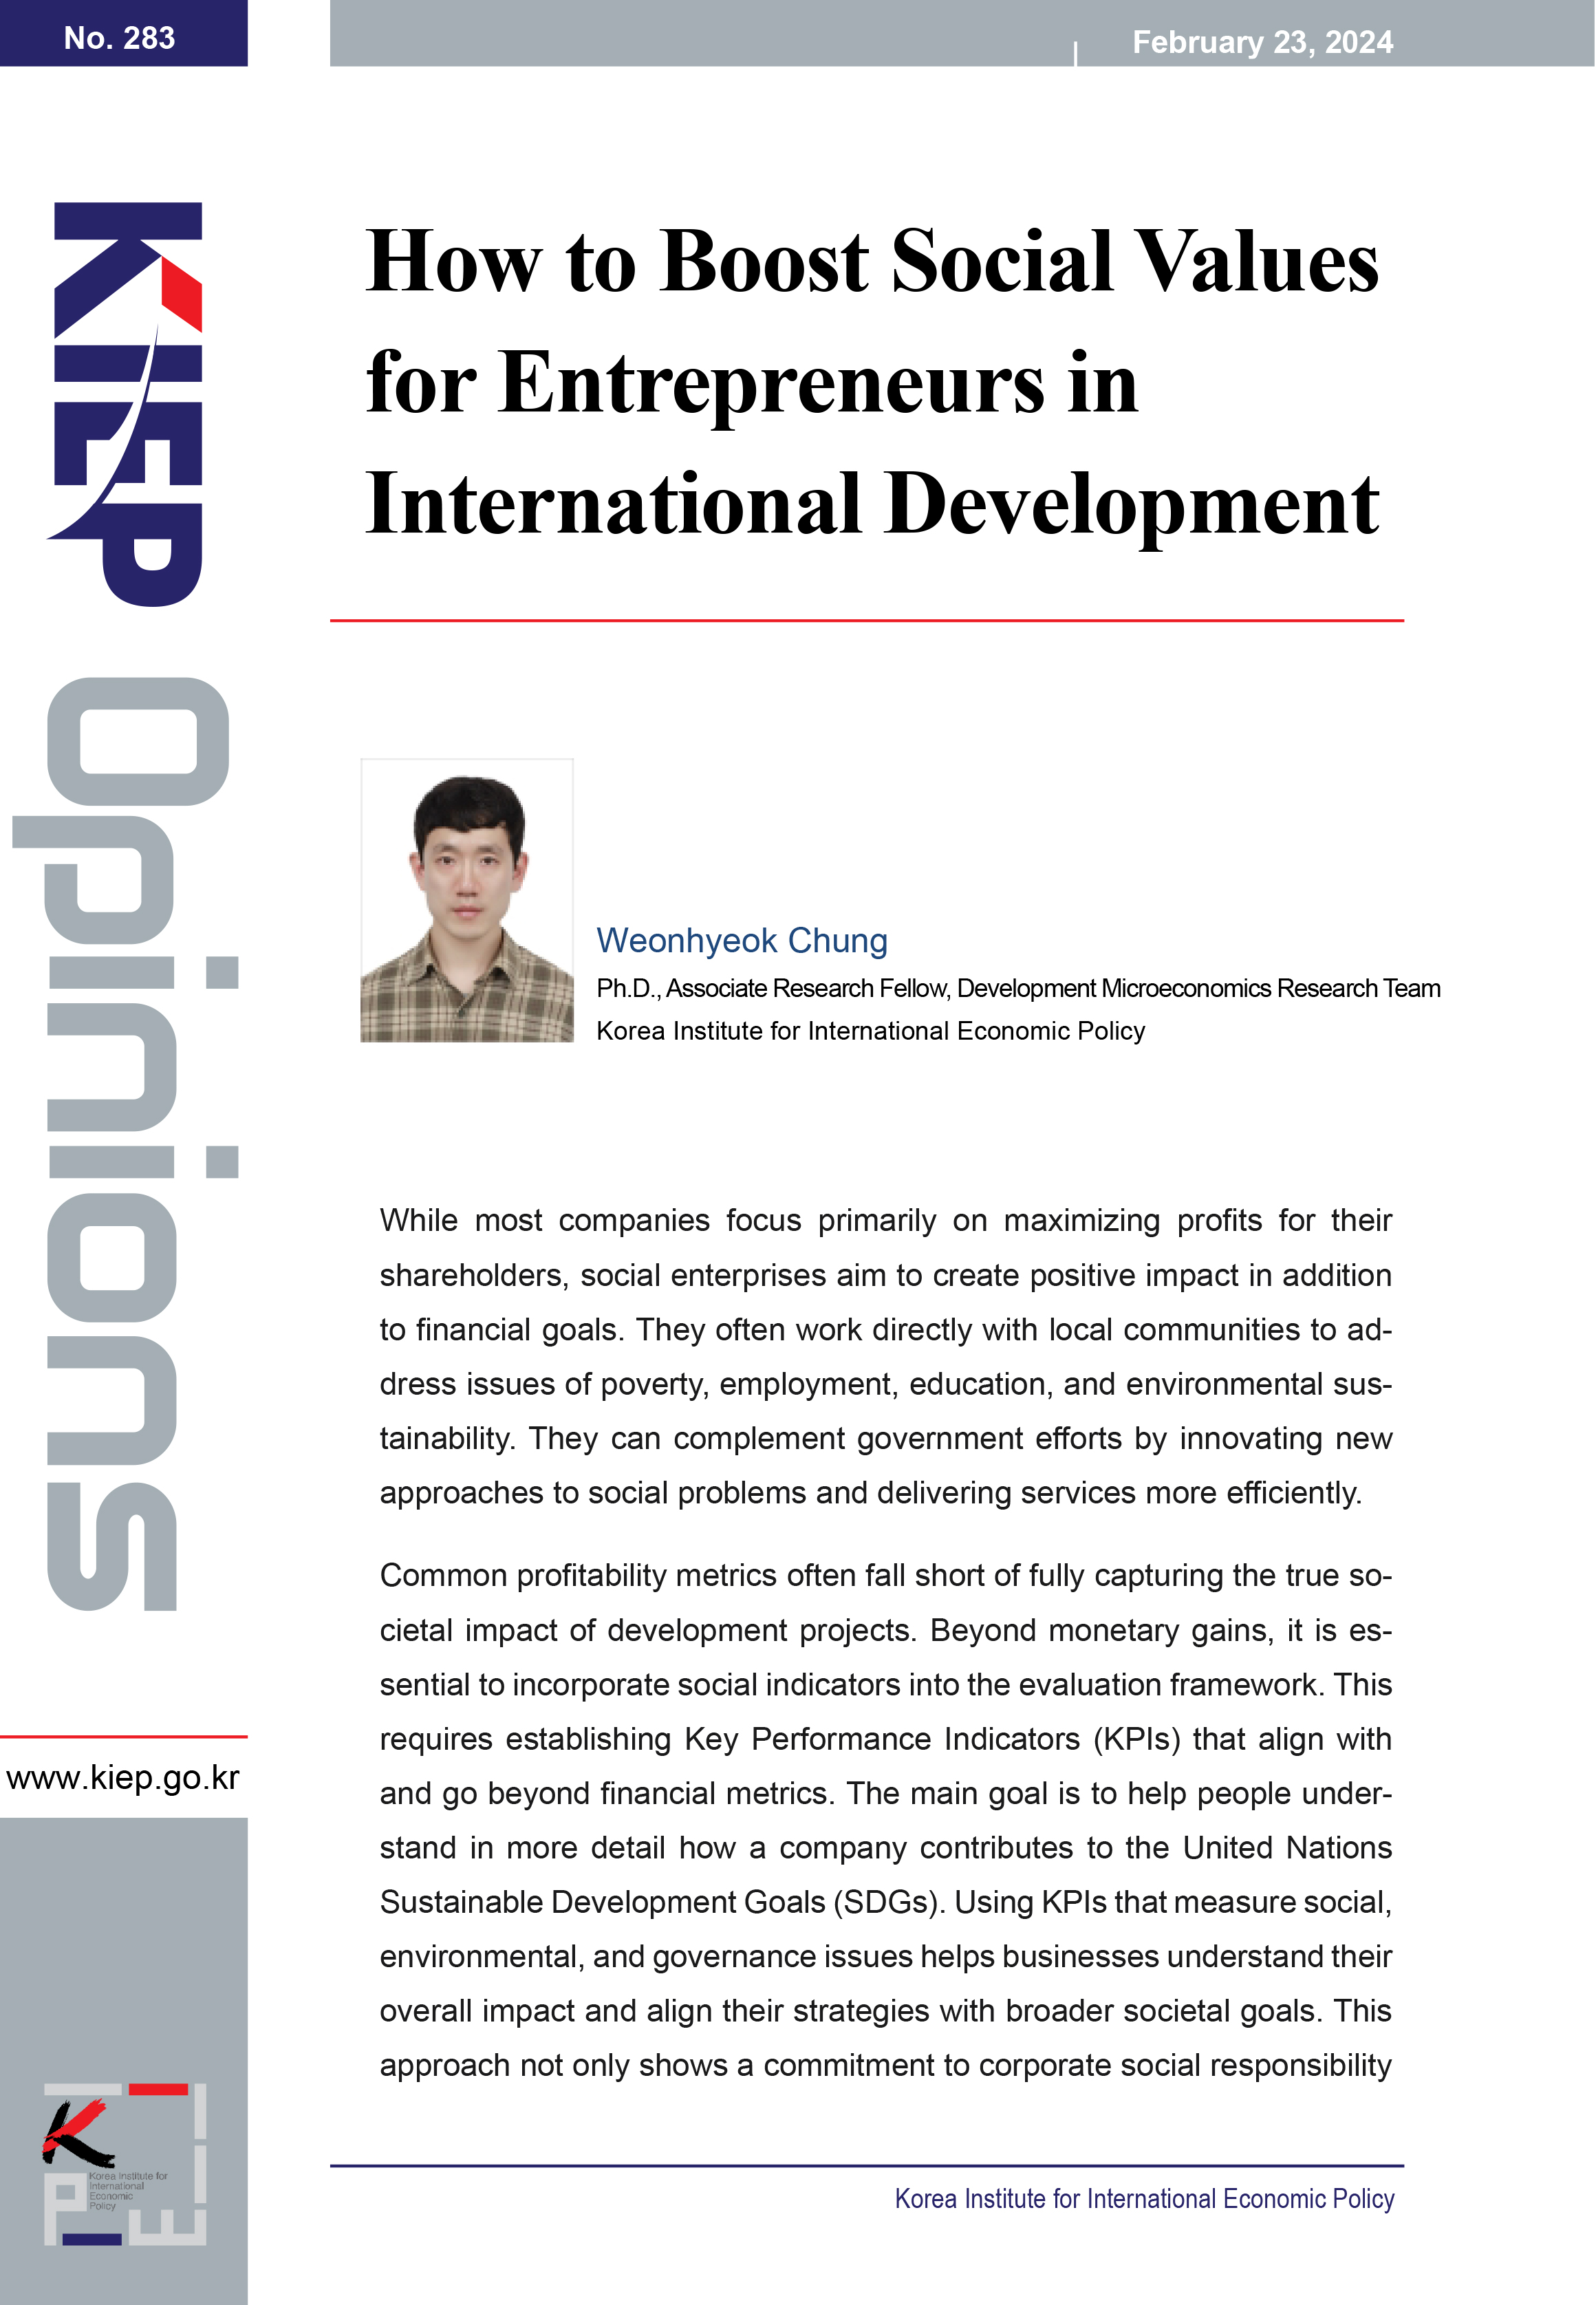 How to Boost Social Values for Entrepreneurs in International Development